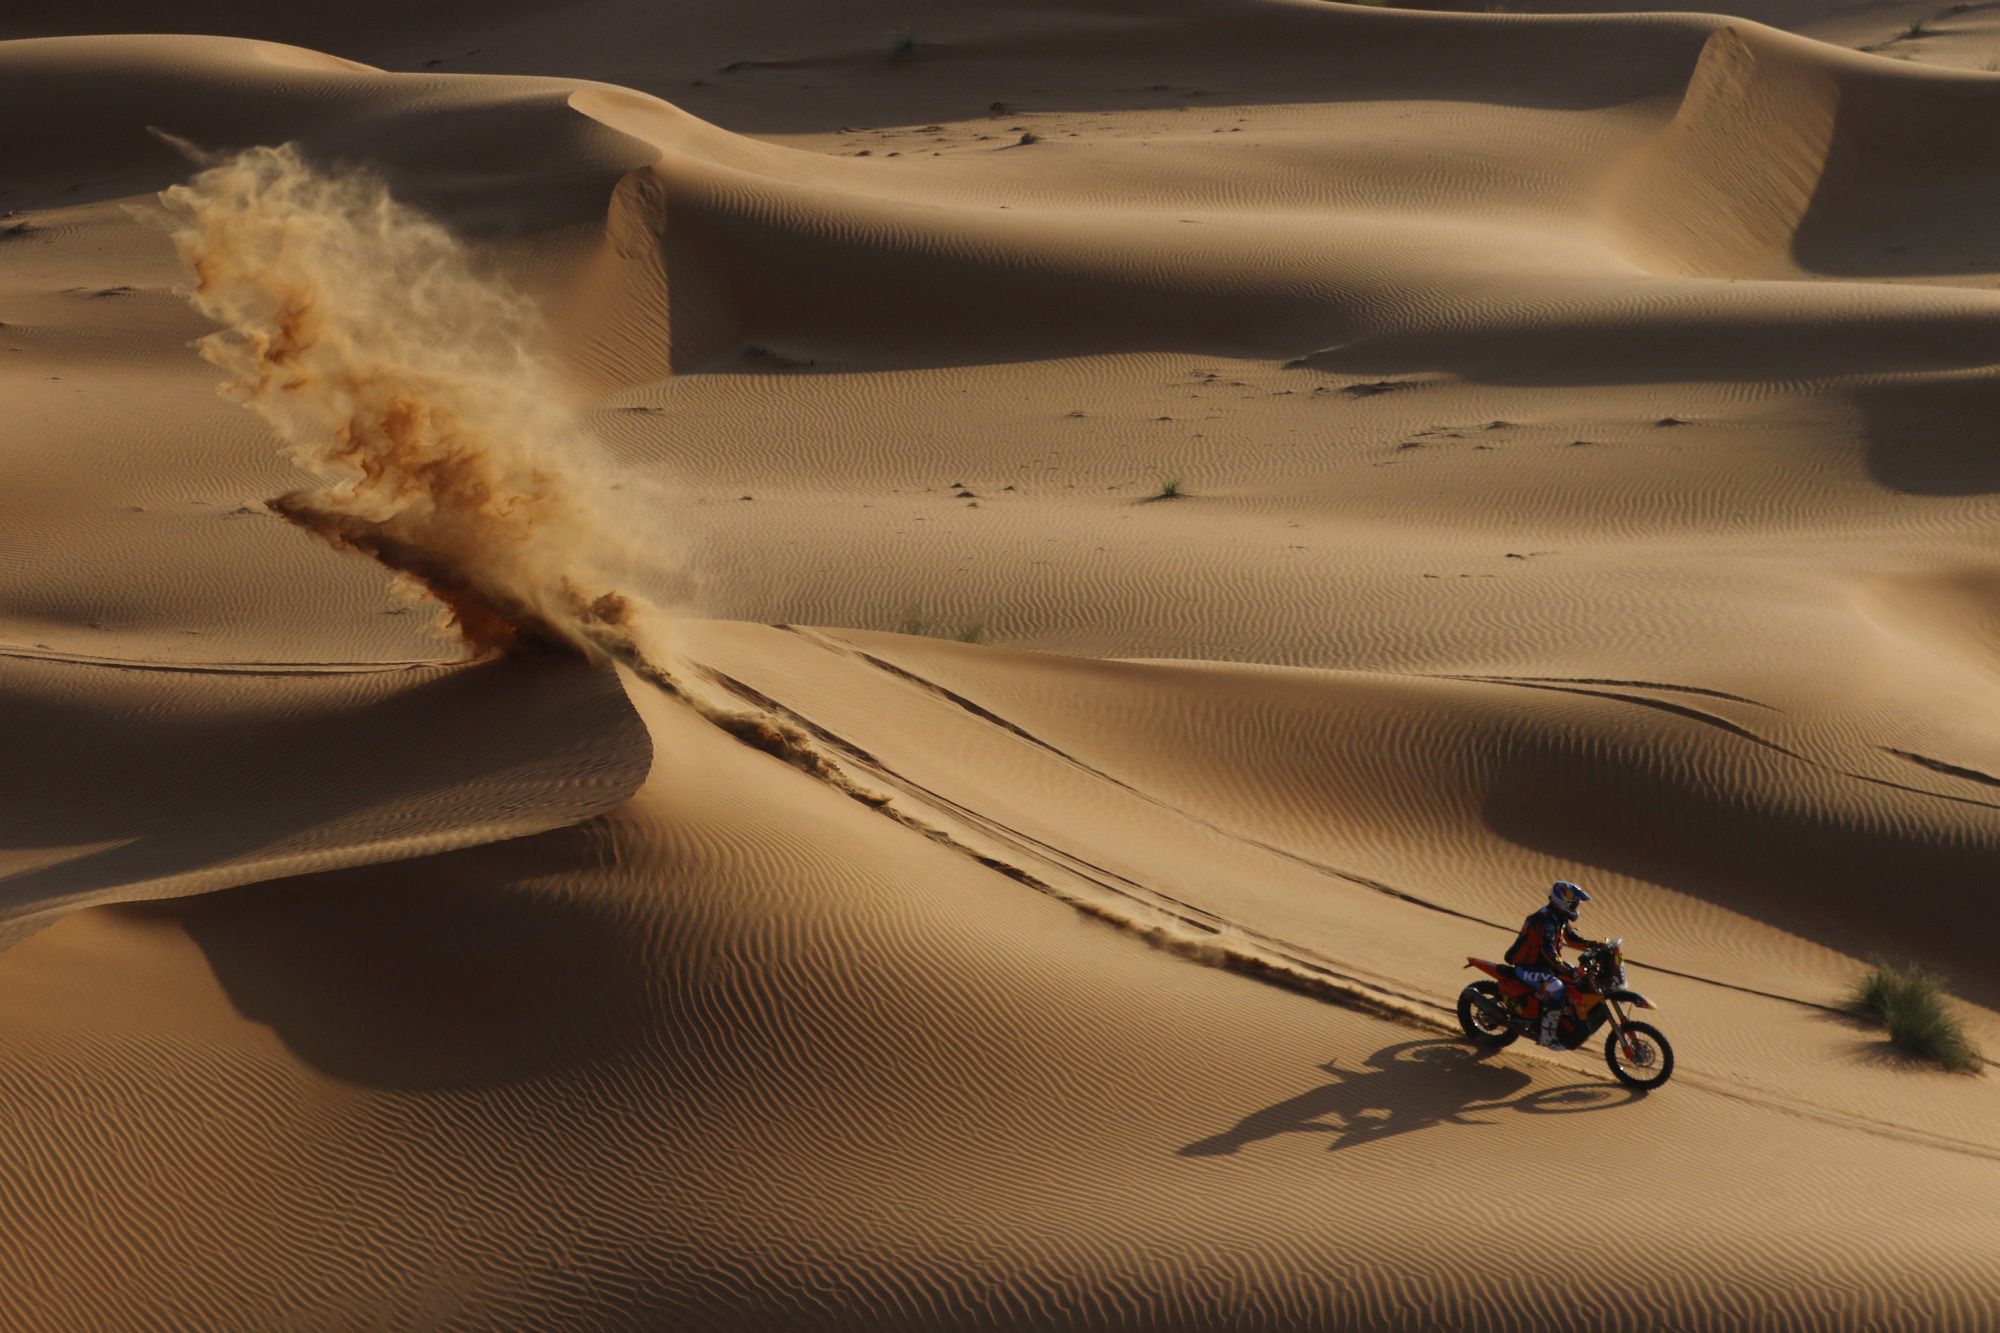 Dakar Rally (163503817).jpg